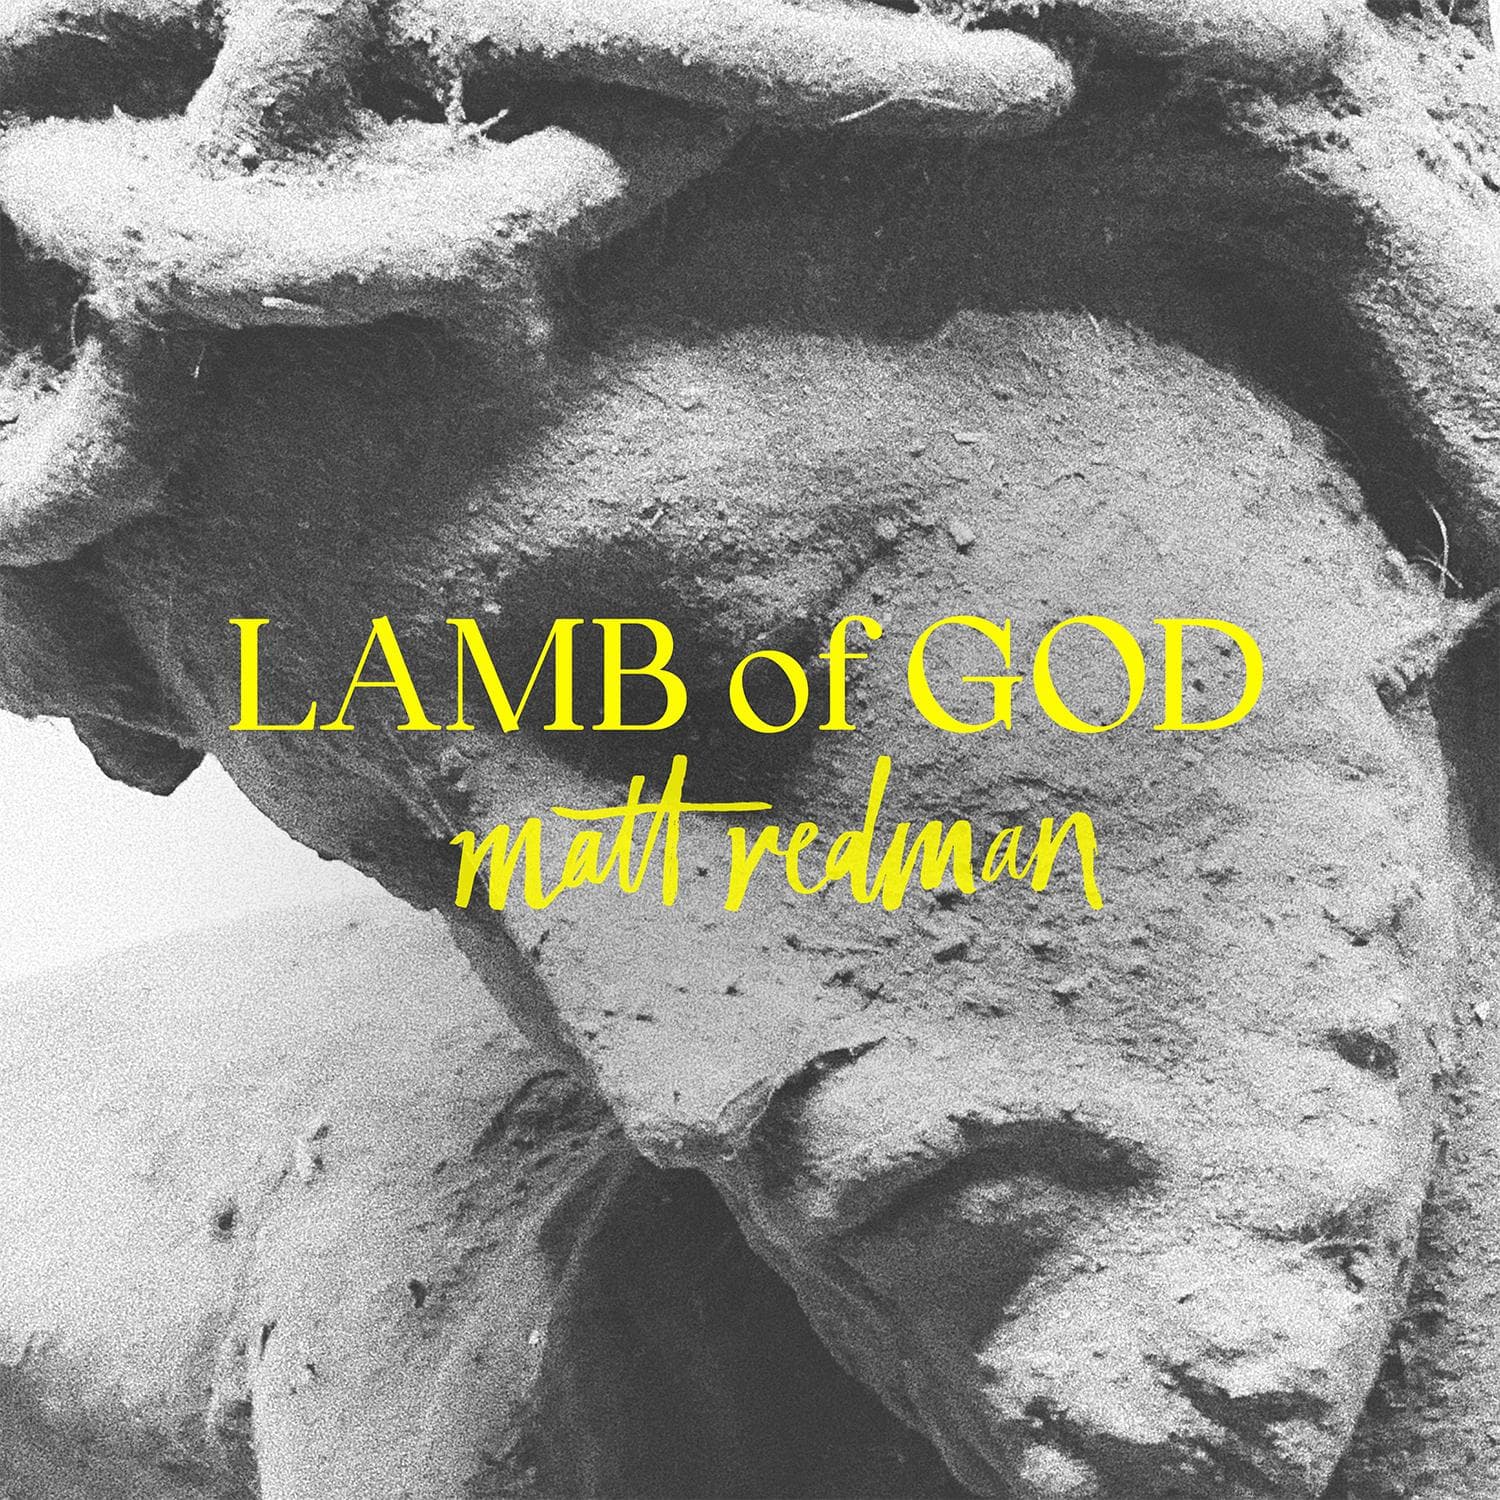 Lamb Of God - Matt Redman